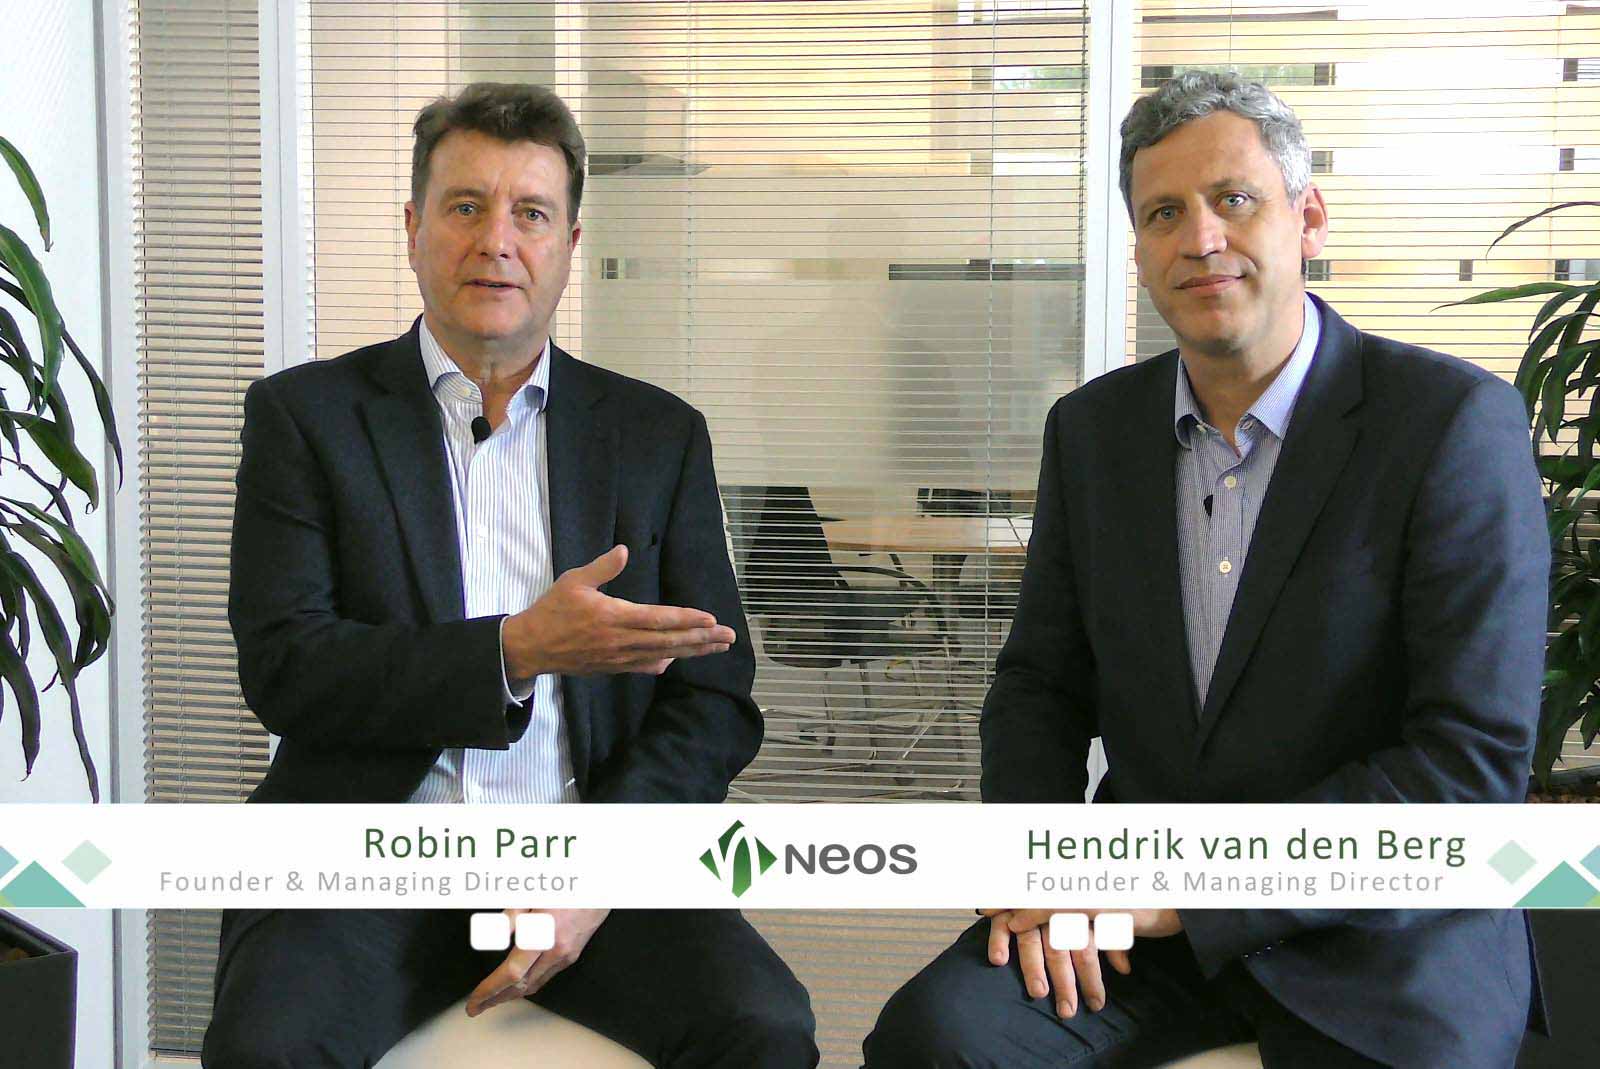 Hendrik van den Berg und Robin Parr Interview